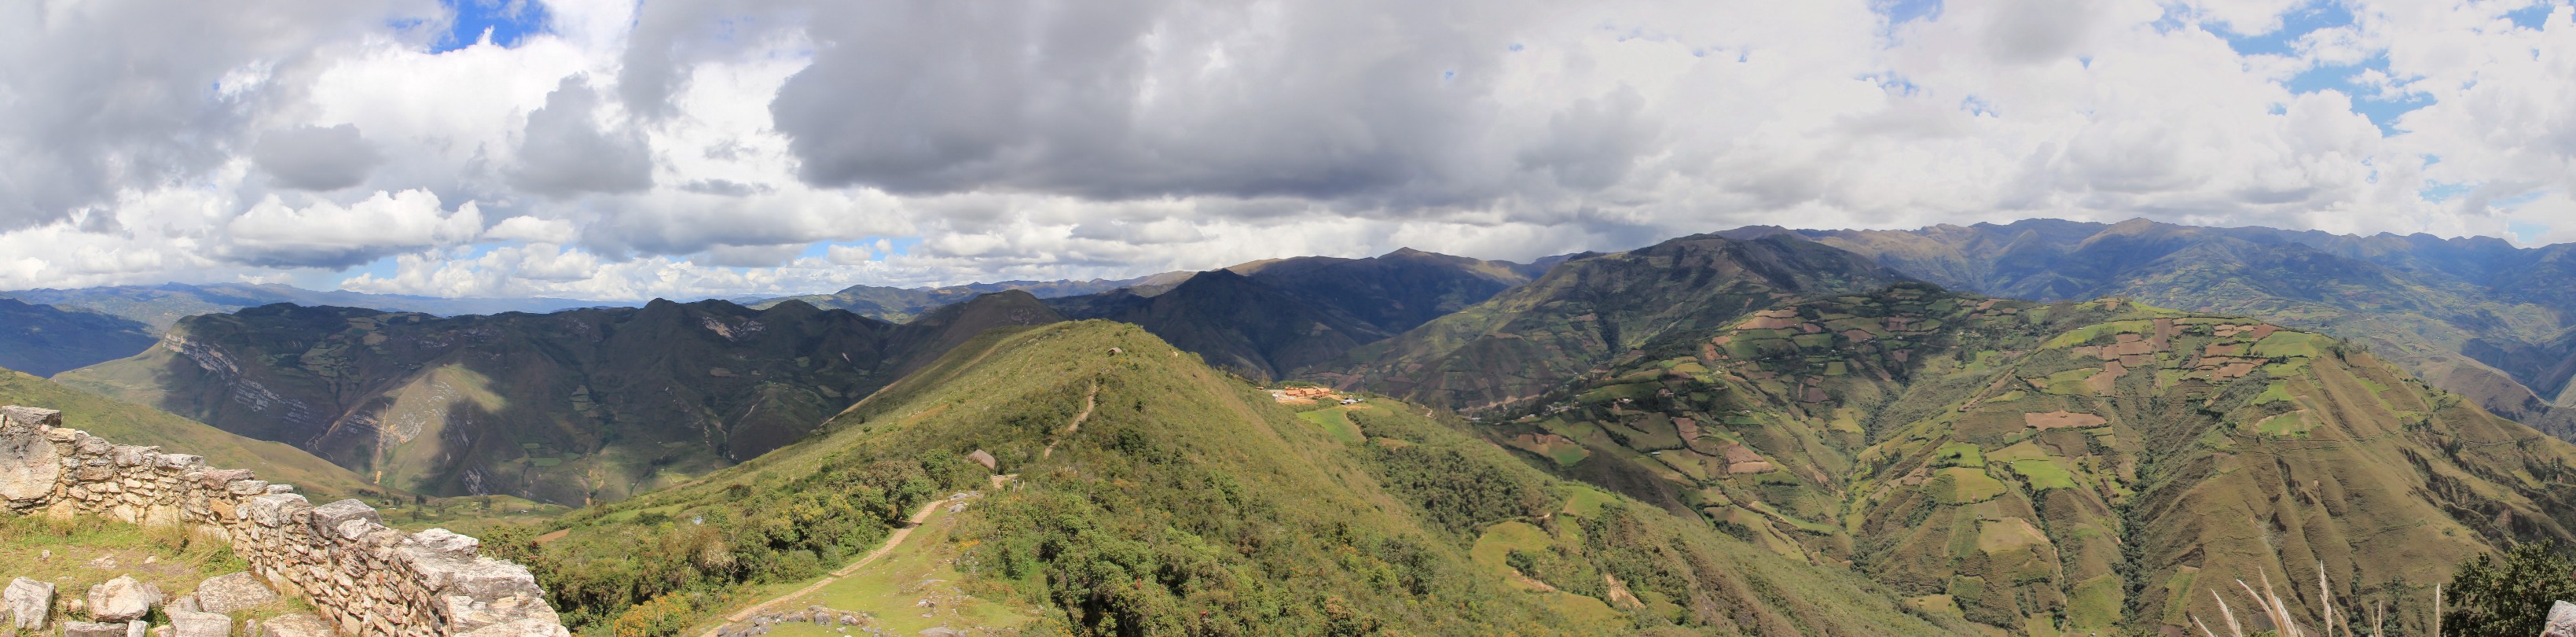 panorama-chachapoya06.jpg